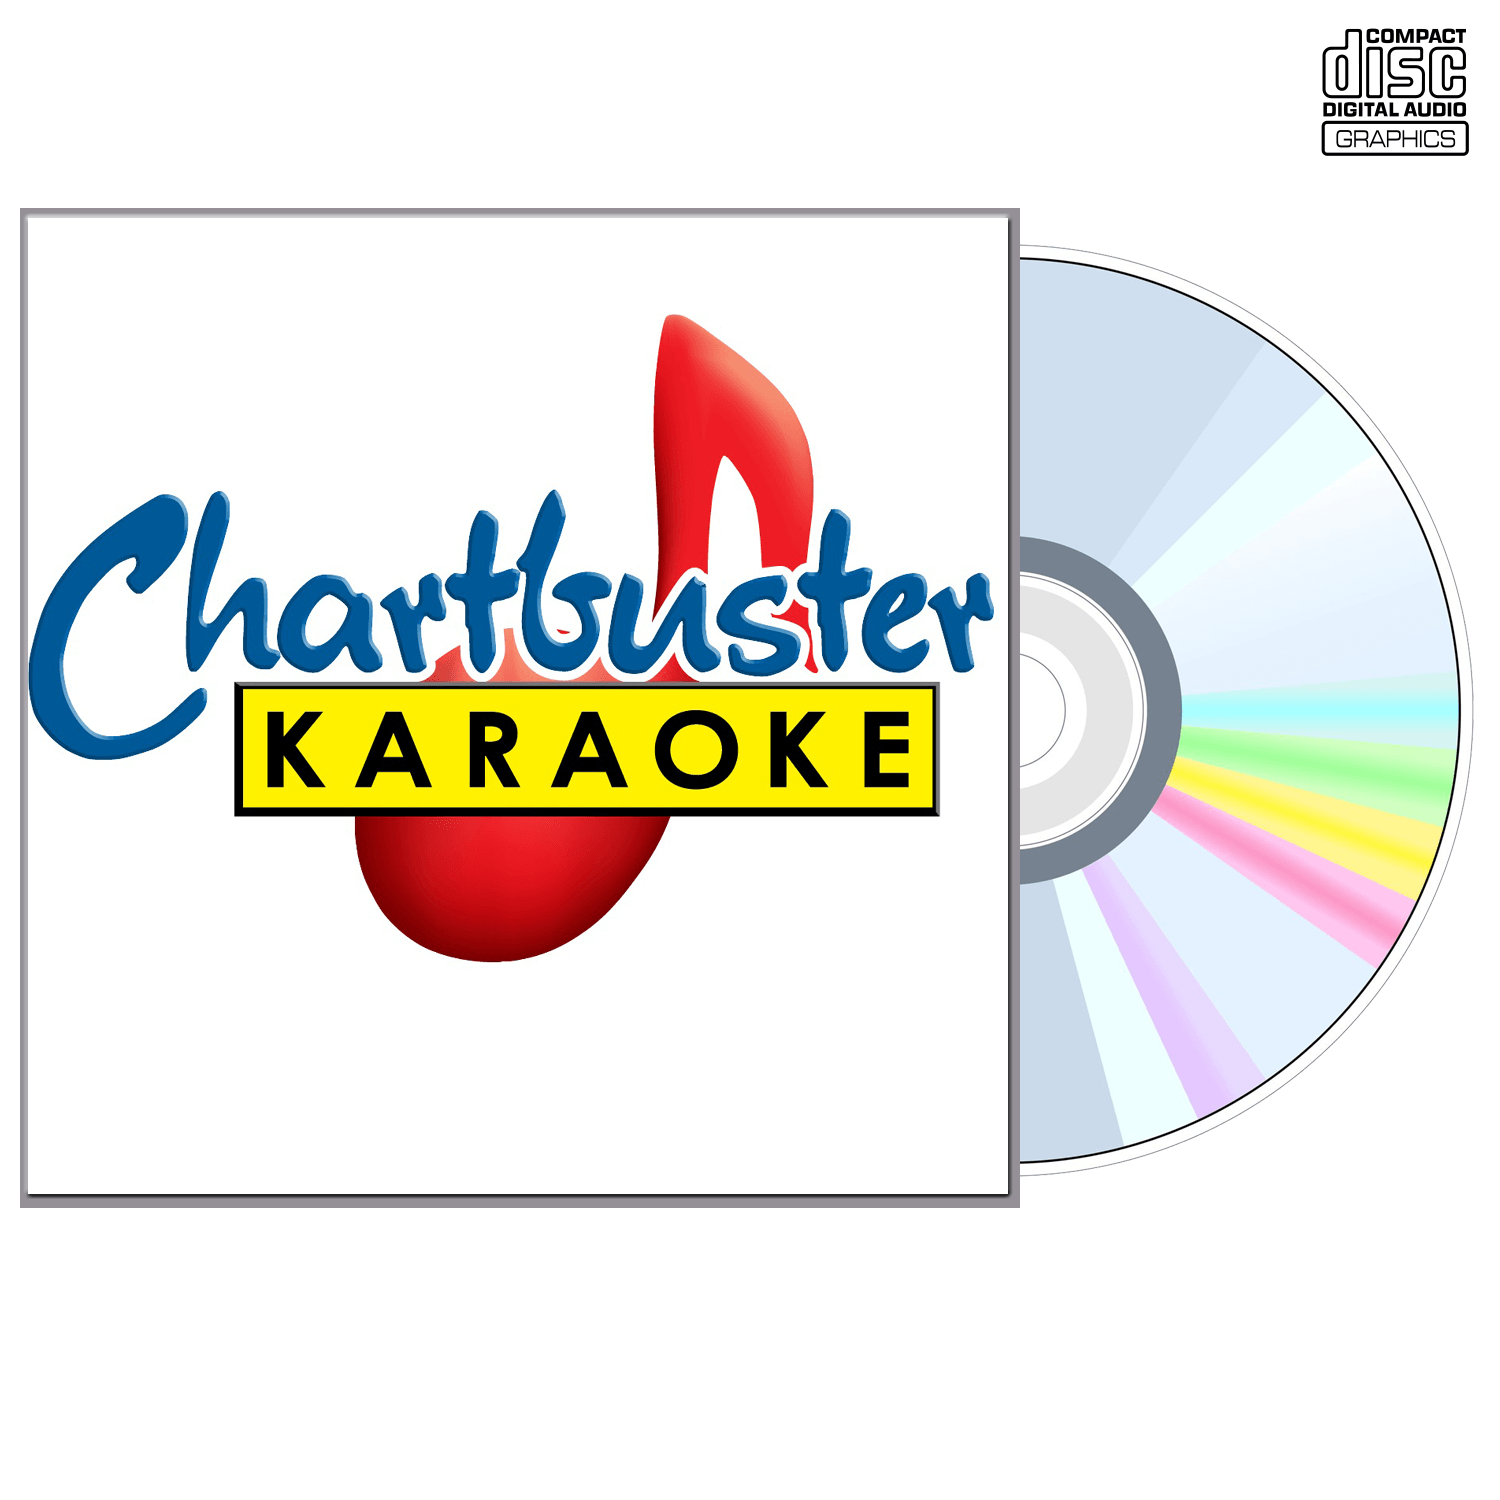 Michael Buble - CD+G - Chartbuster Karaoke - Karaoke Home Entertainment